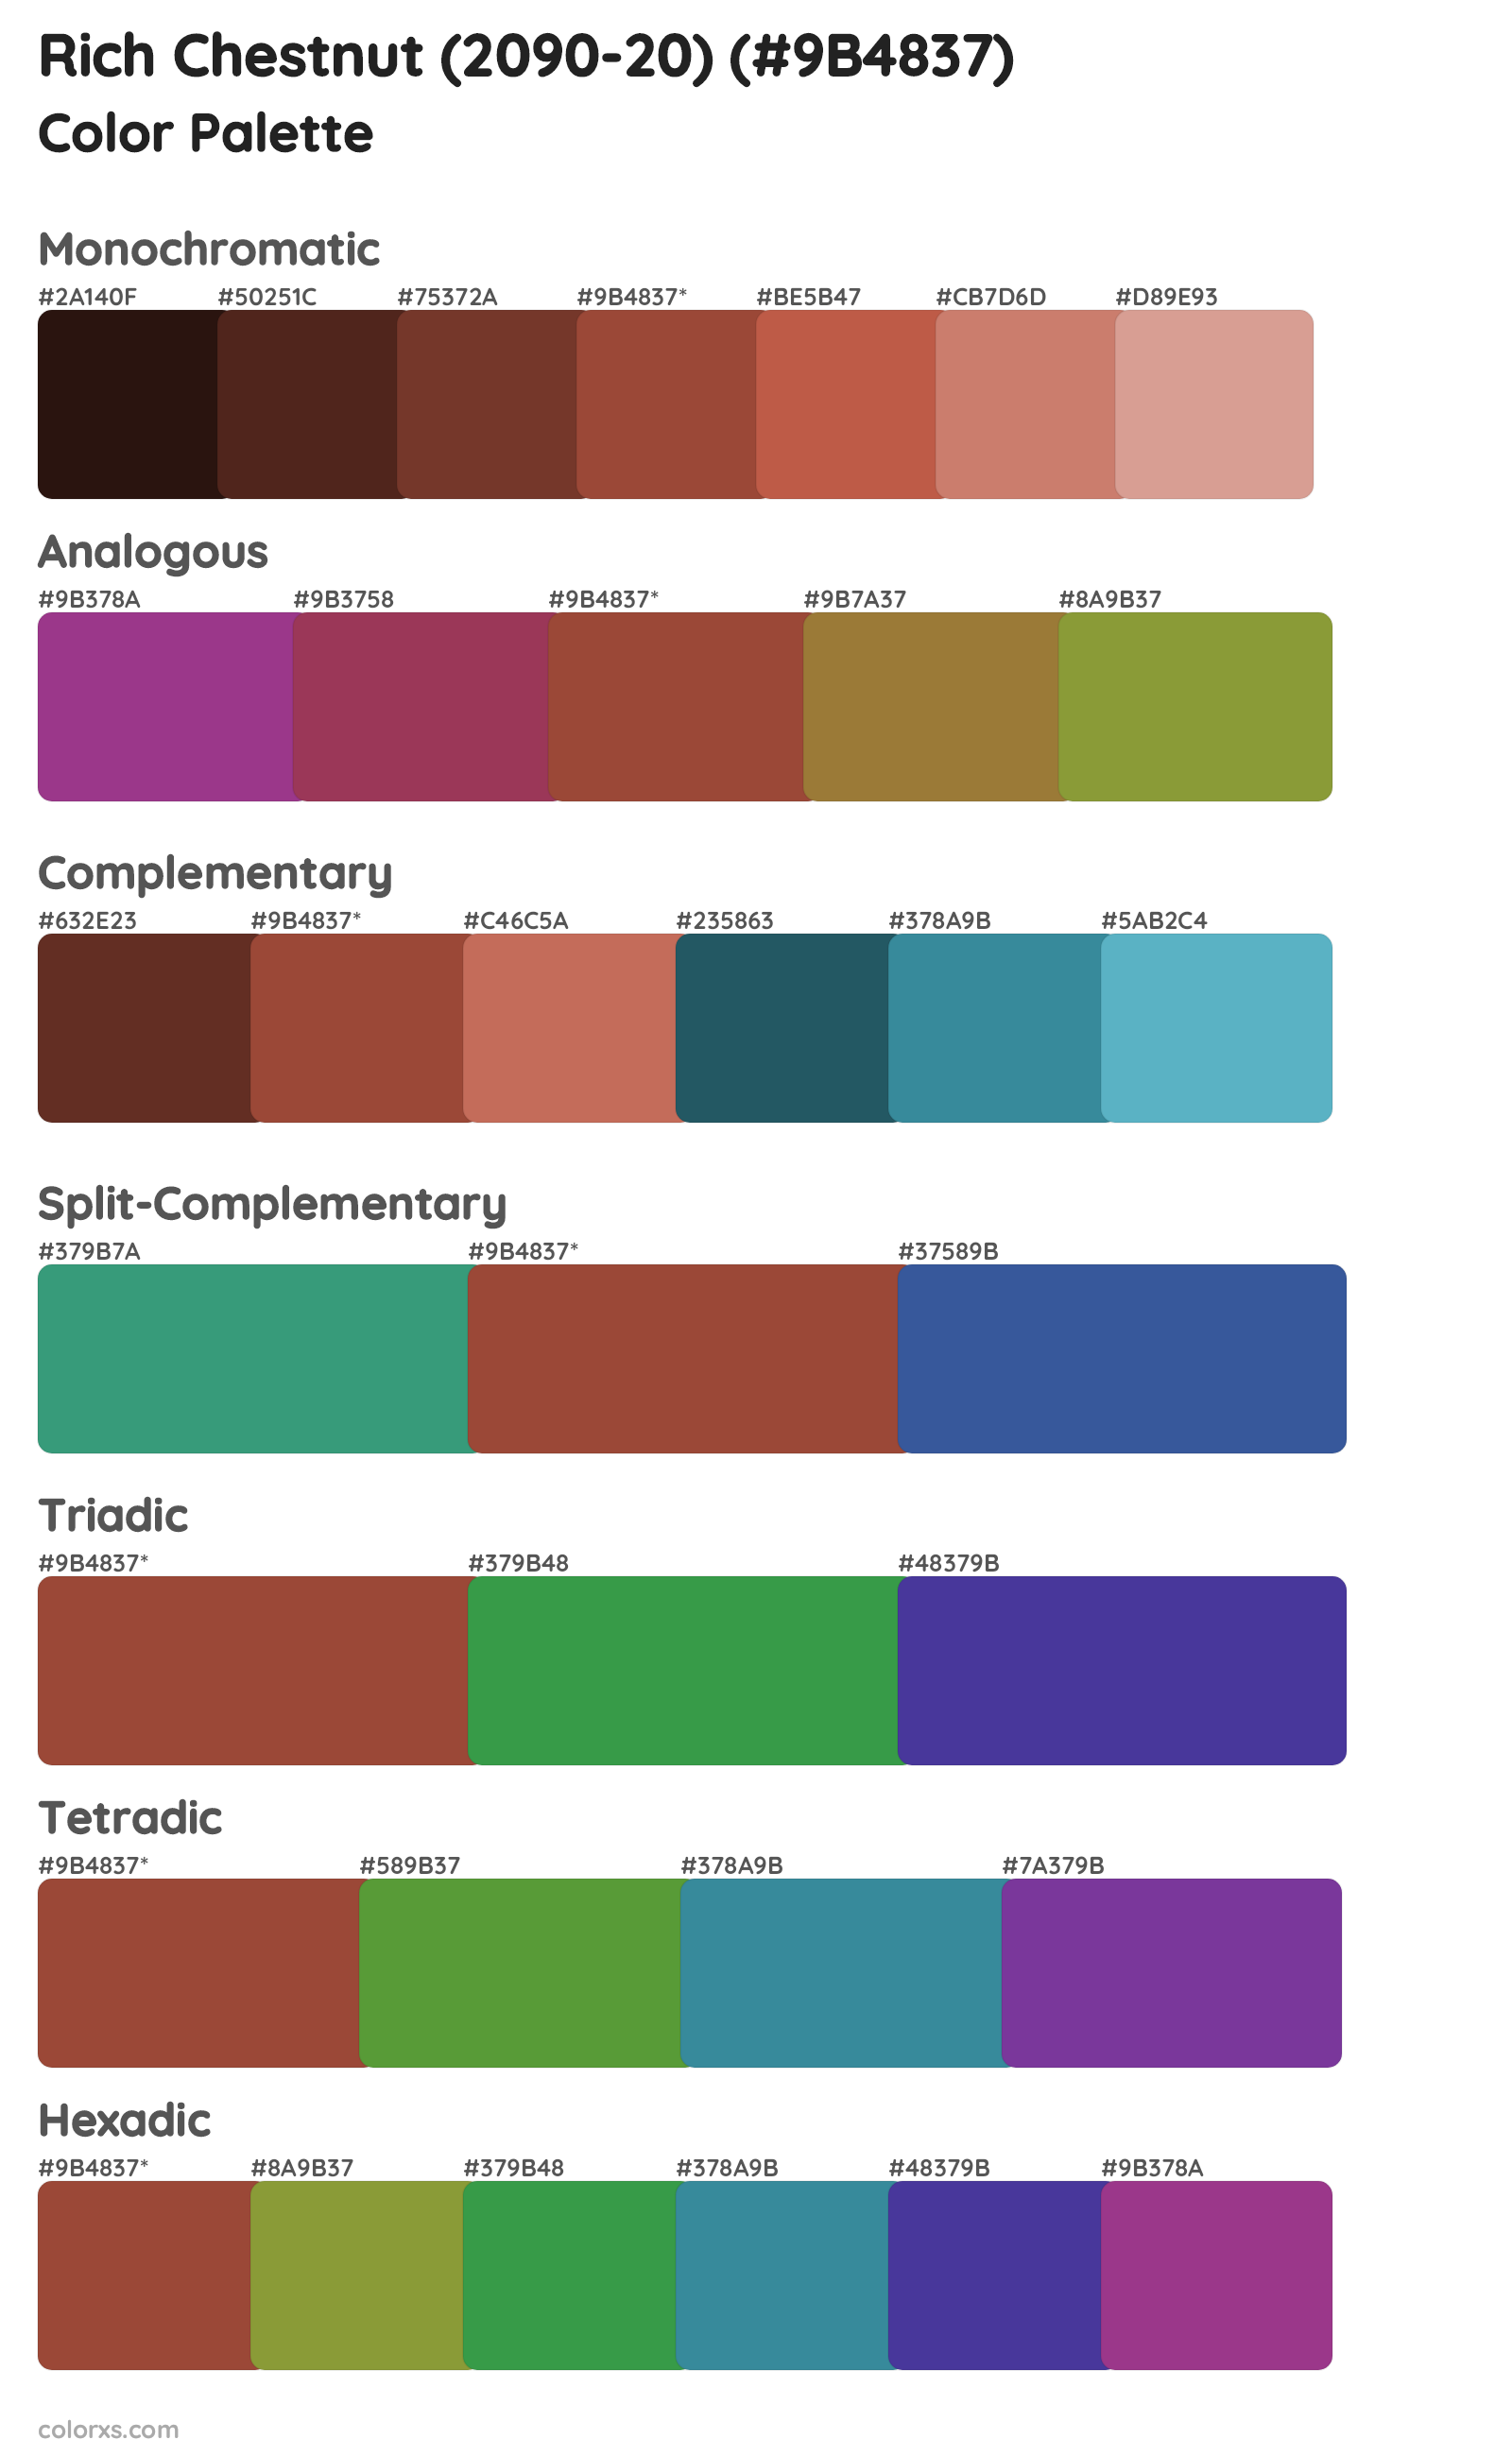 Rich Chestnut (2090-20) Color Scheme Palettes